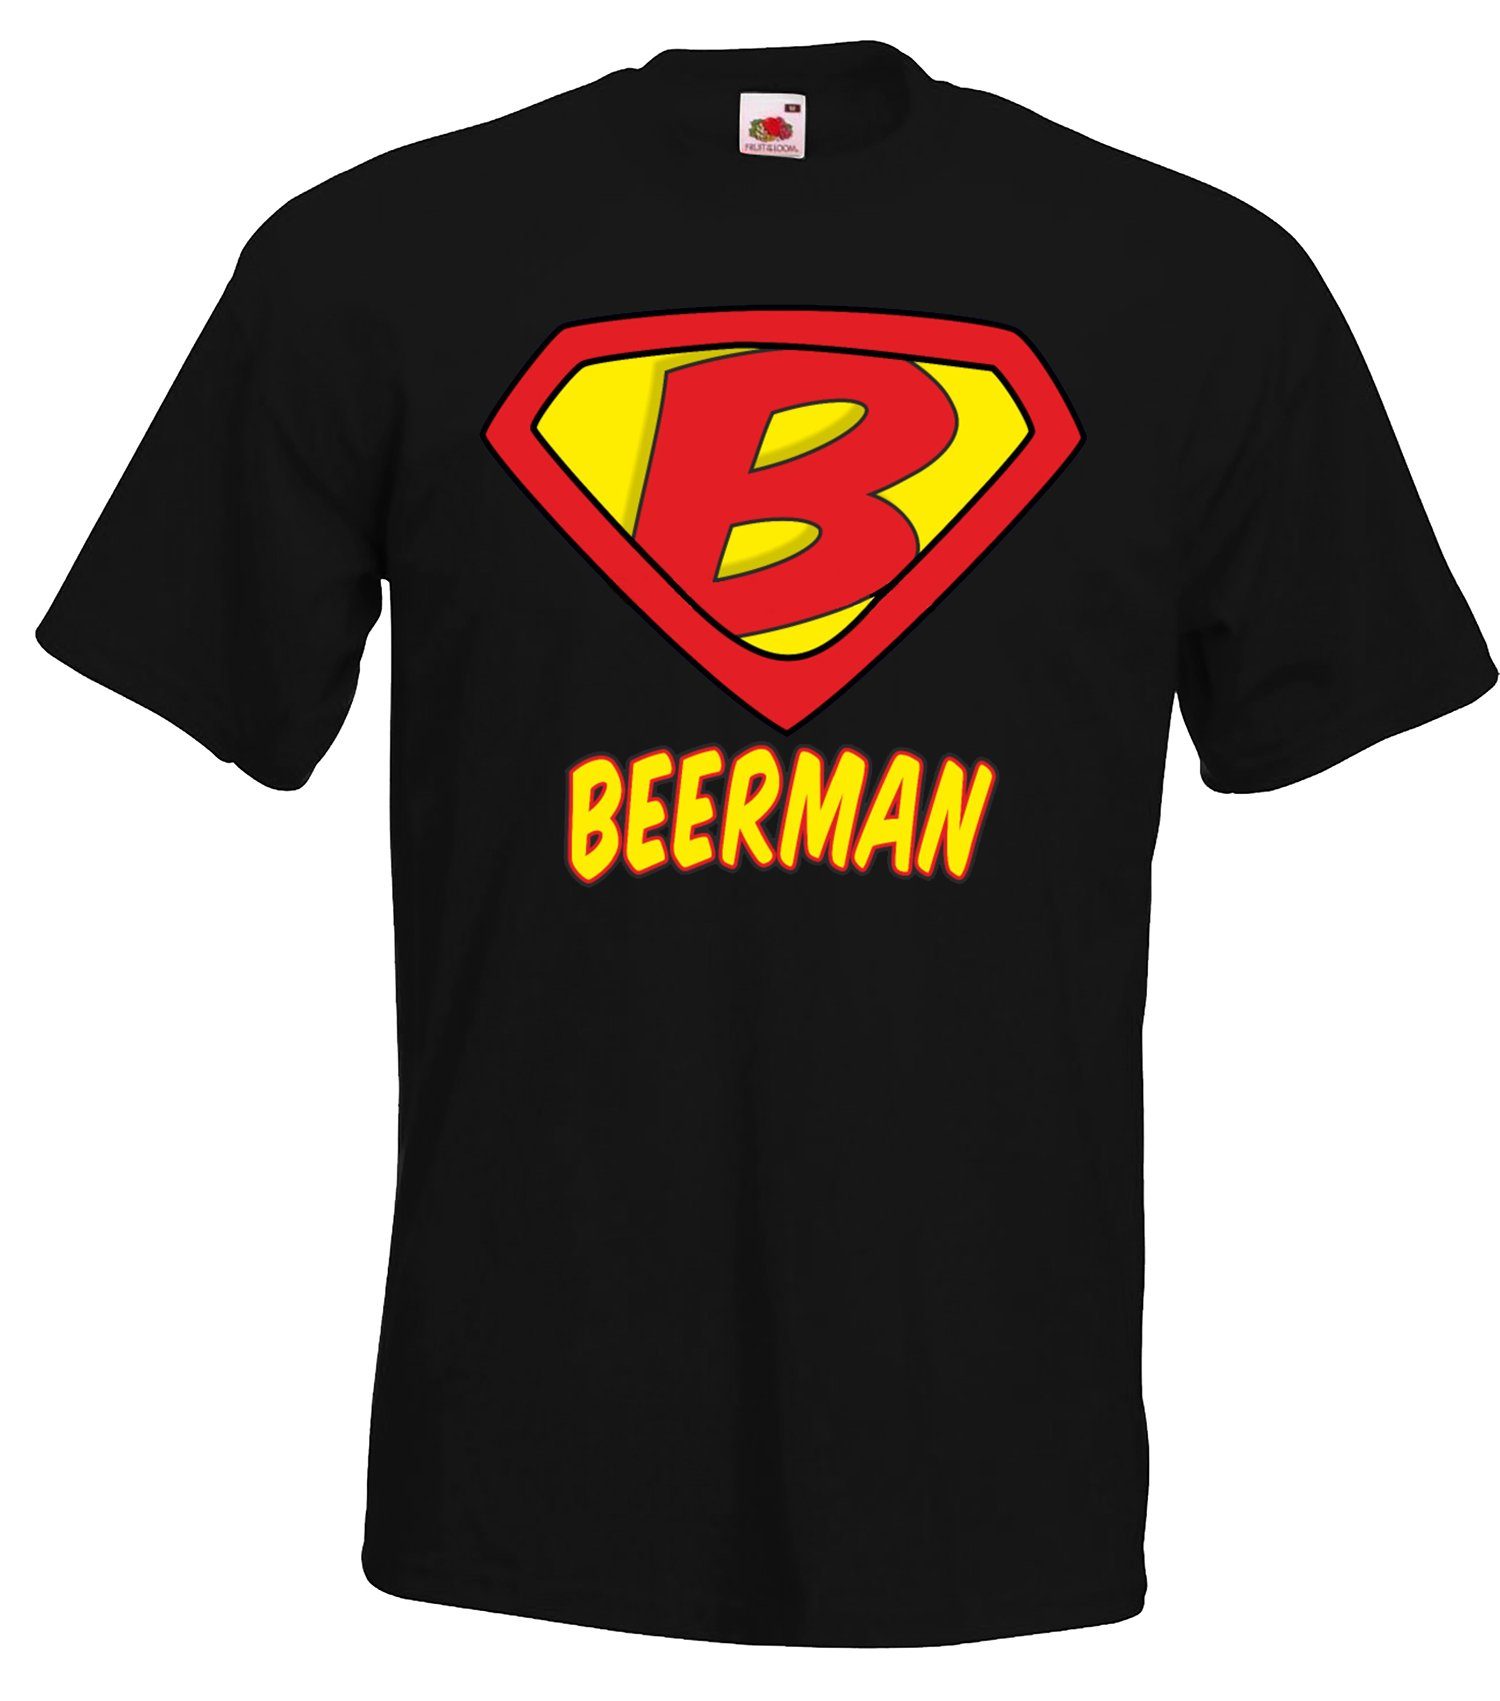 Sonderangebotsartikel Youth Designz T-Shirt Beerman Herren witzigem Schwarz Frontprint mit Helden Shirt